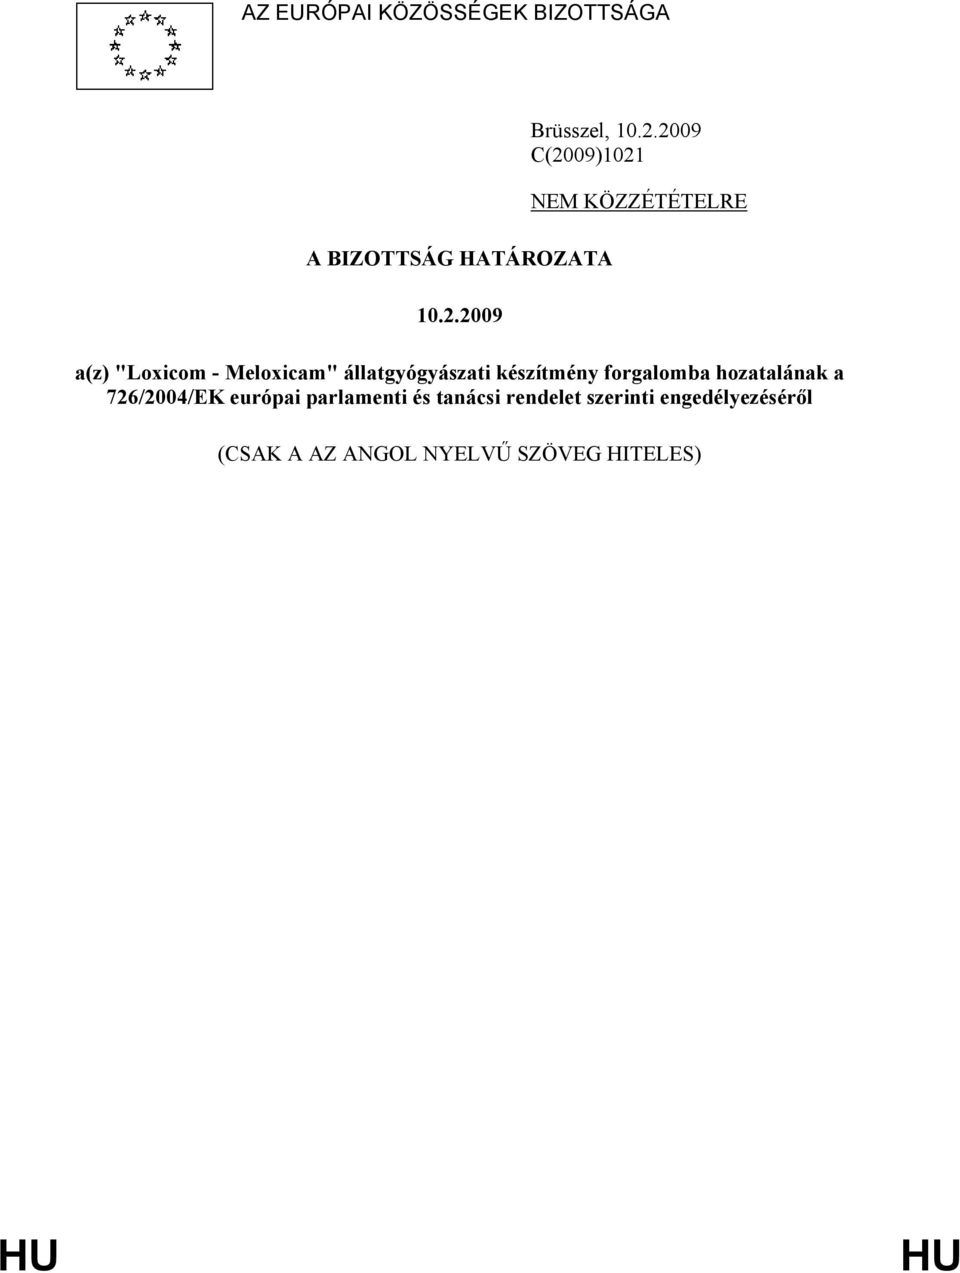 Meloxicam" állatgyógyászati készítmény forgalomba hozatalának a 726/2004/EK